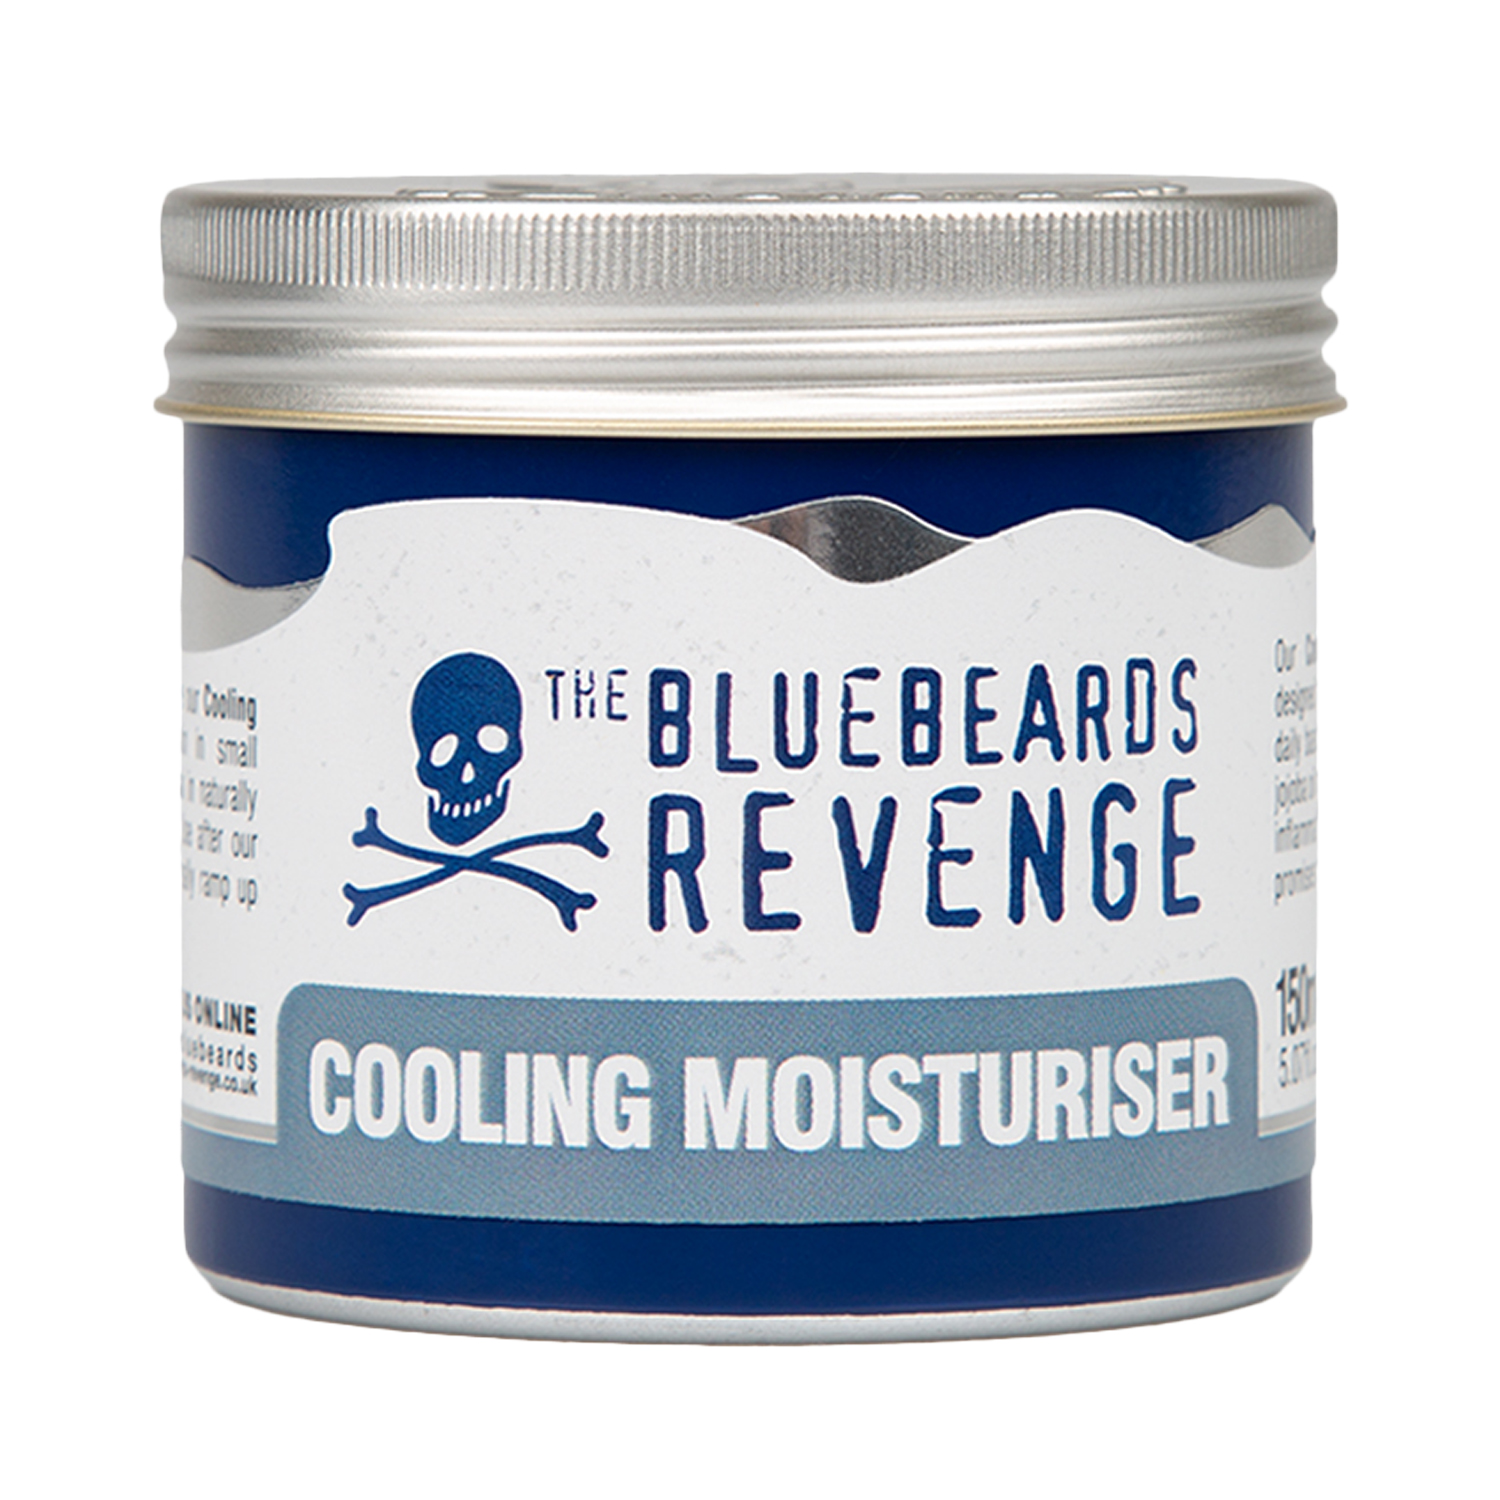 The Bluebeards Revenge - Cooling Moisturiser - kühlende Feuchtigkeitscreme